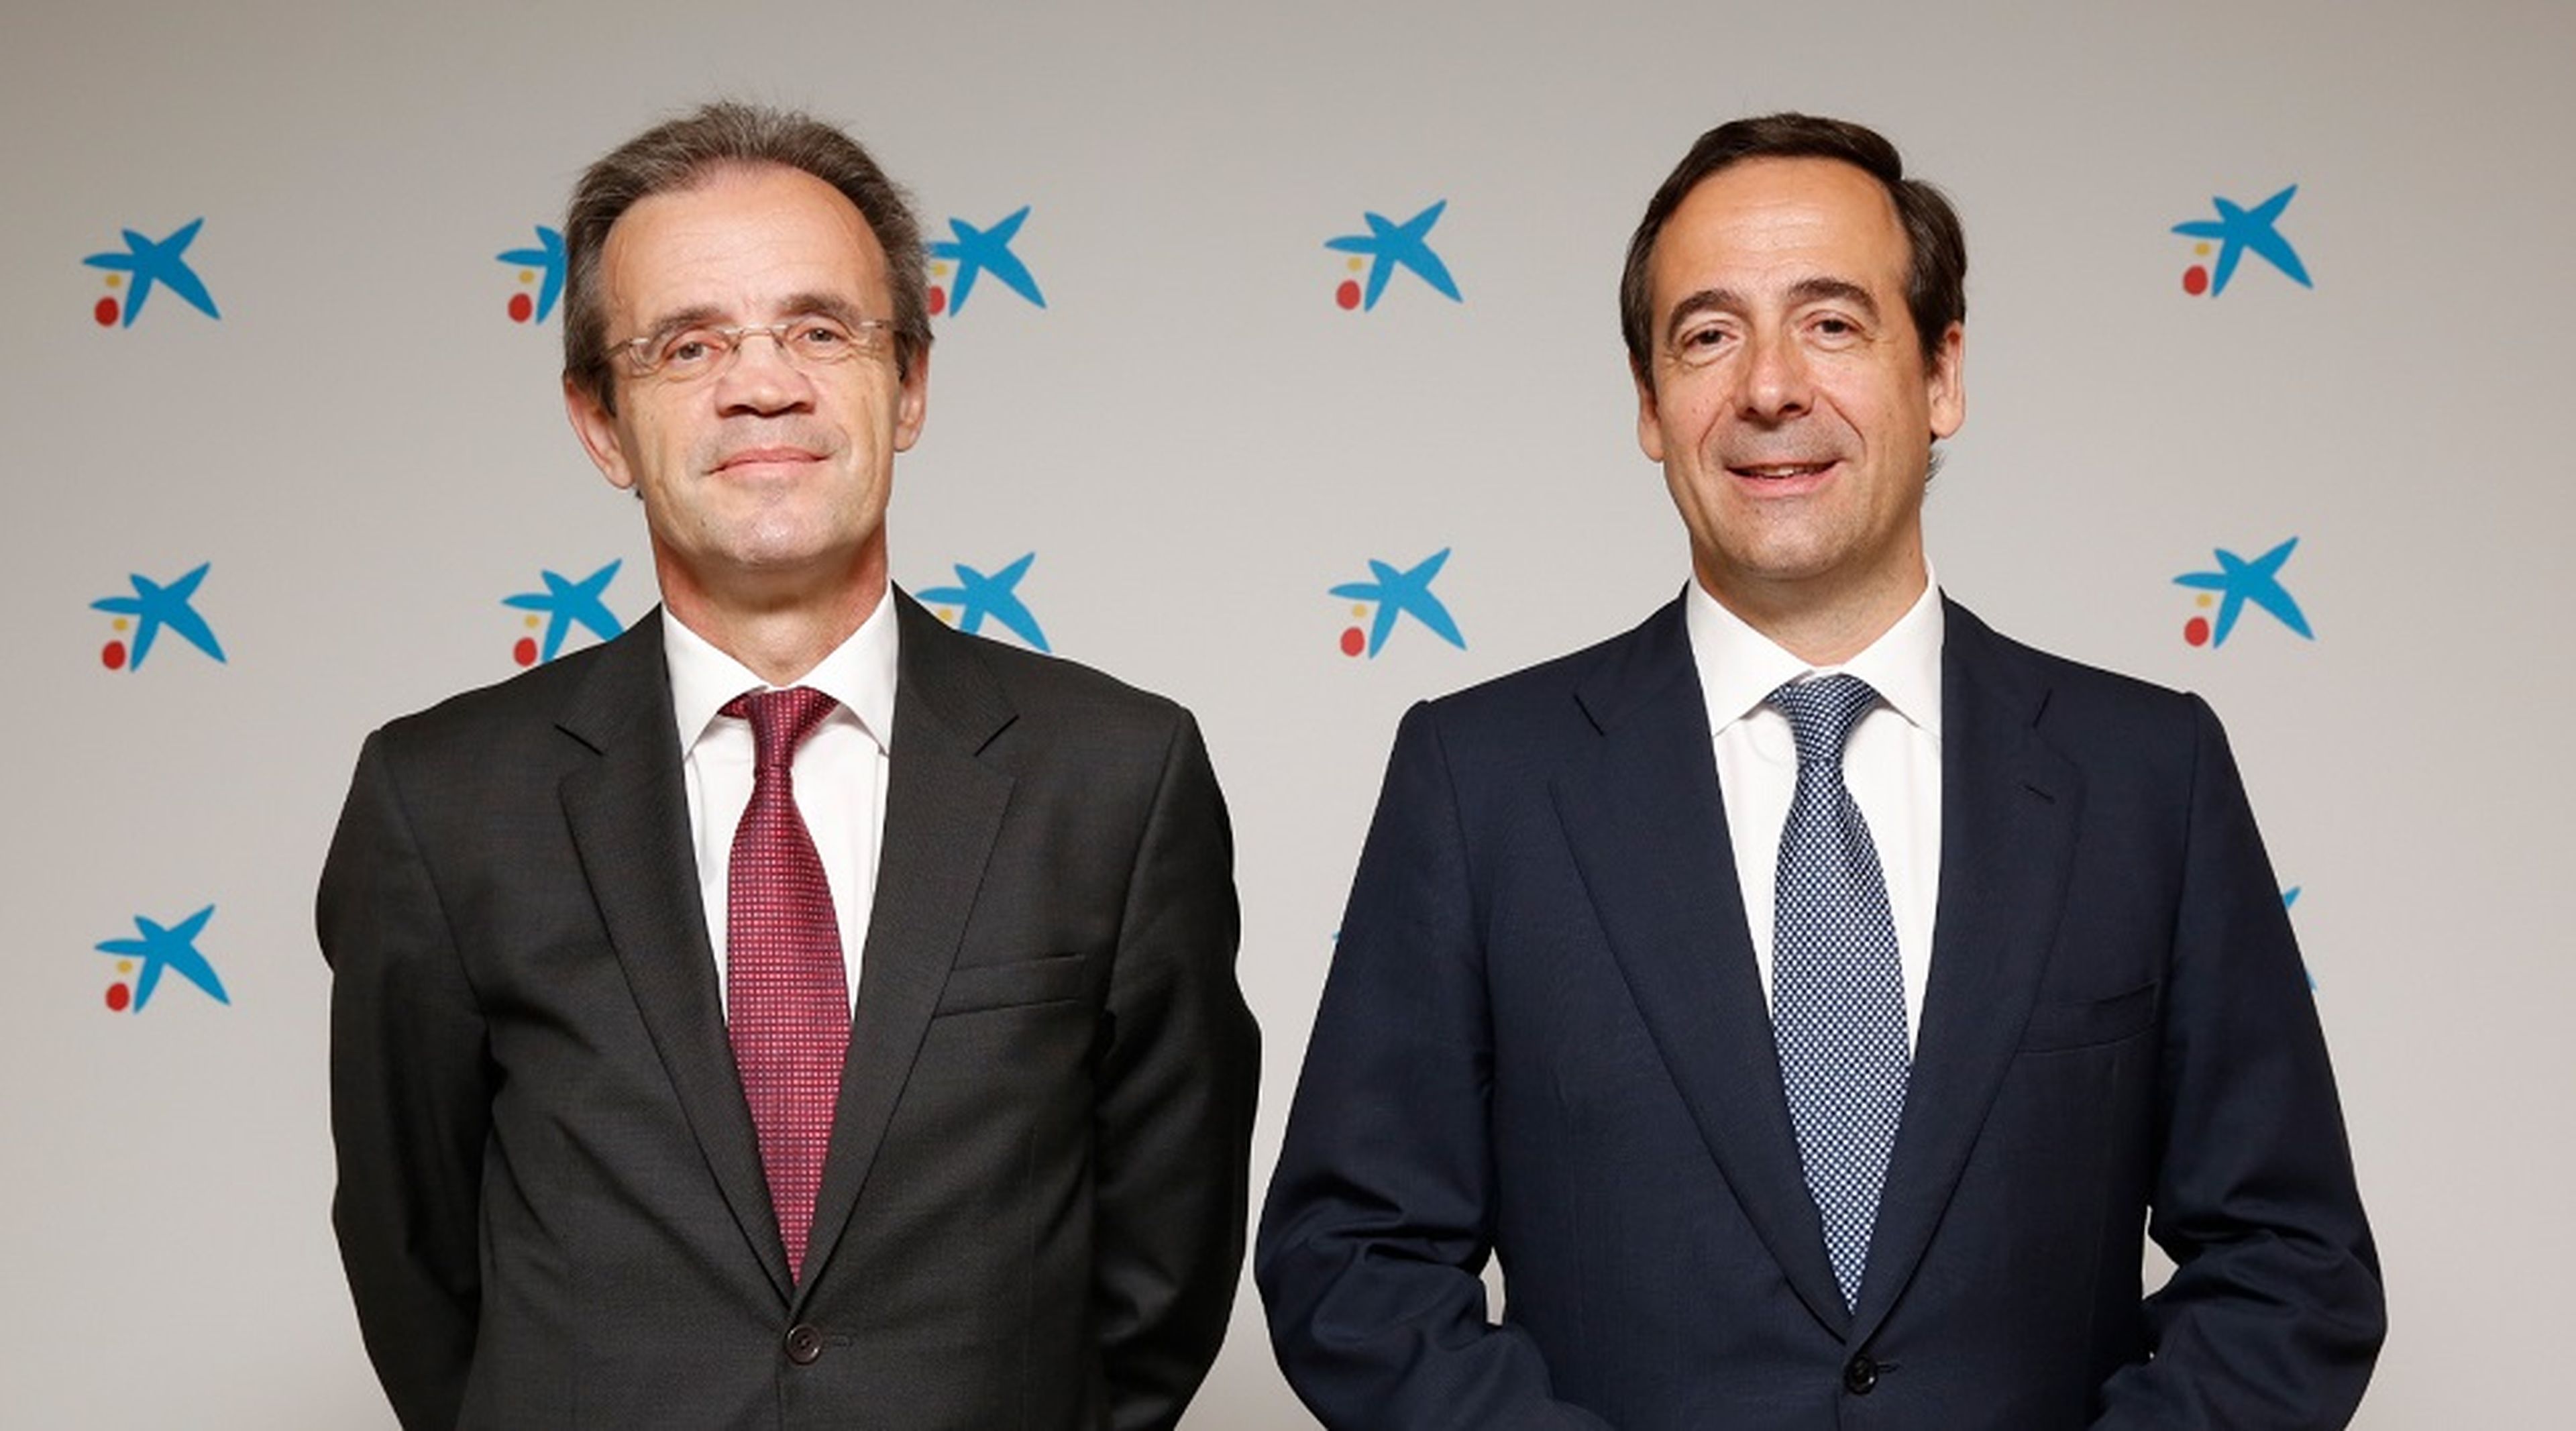 Jordi Gual, presidente de CaixaBank (izq.) y Gonzalo Gortázar, consejero delegado de CaixaBank.